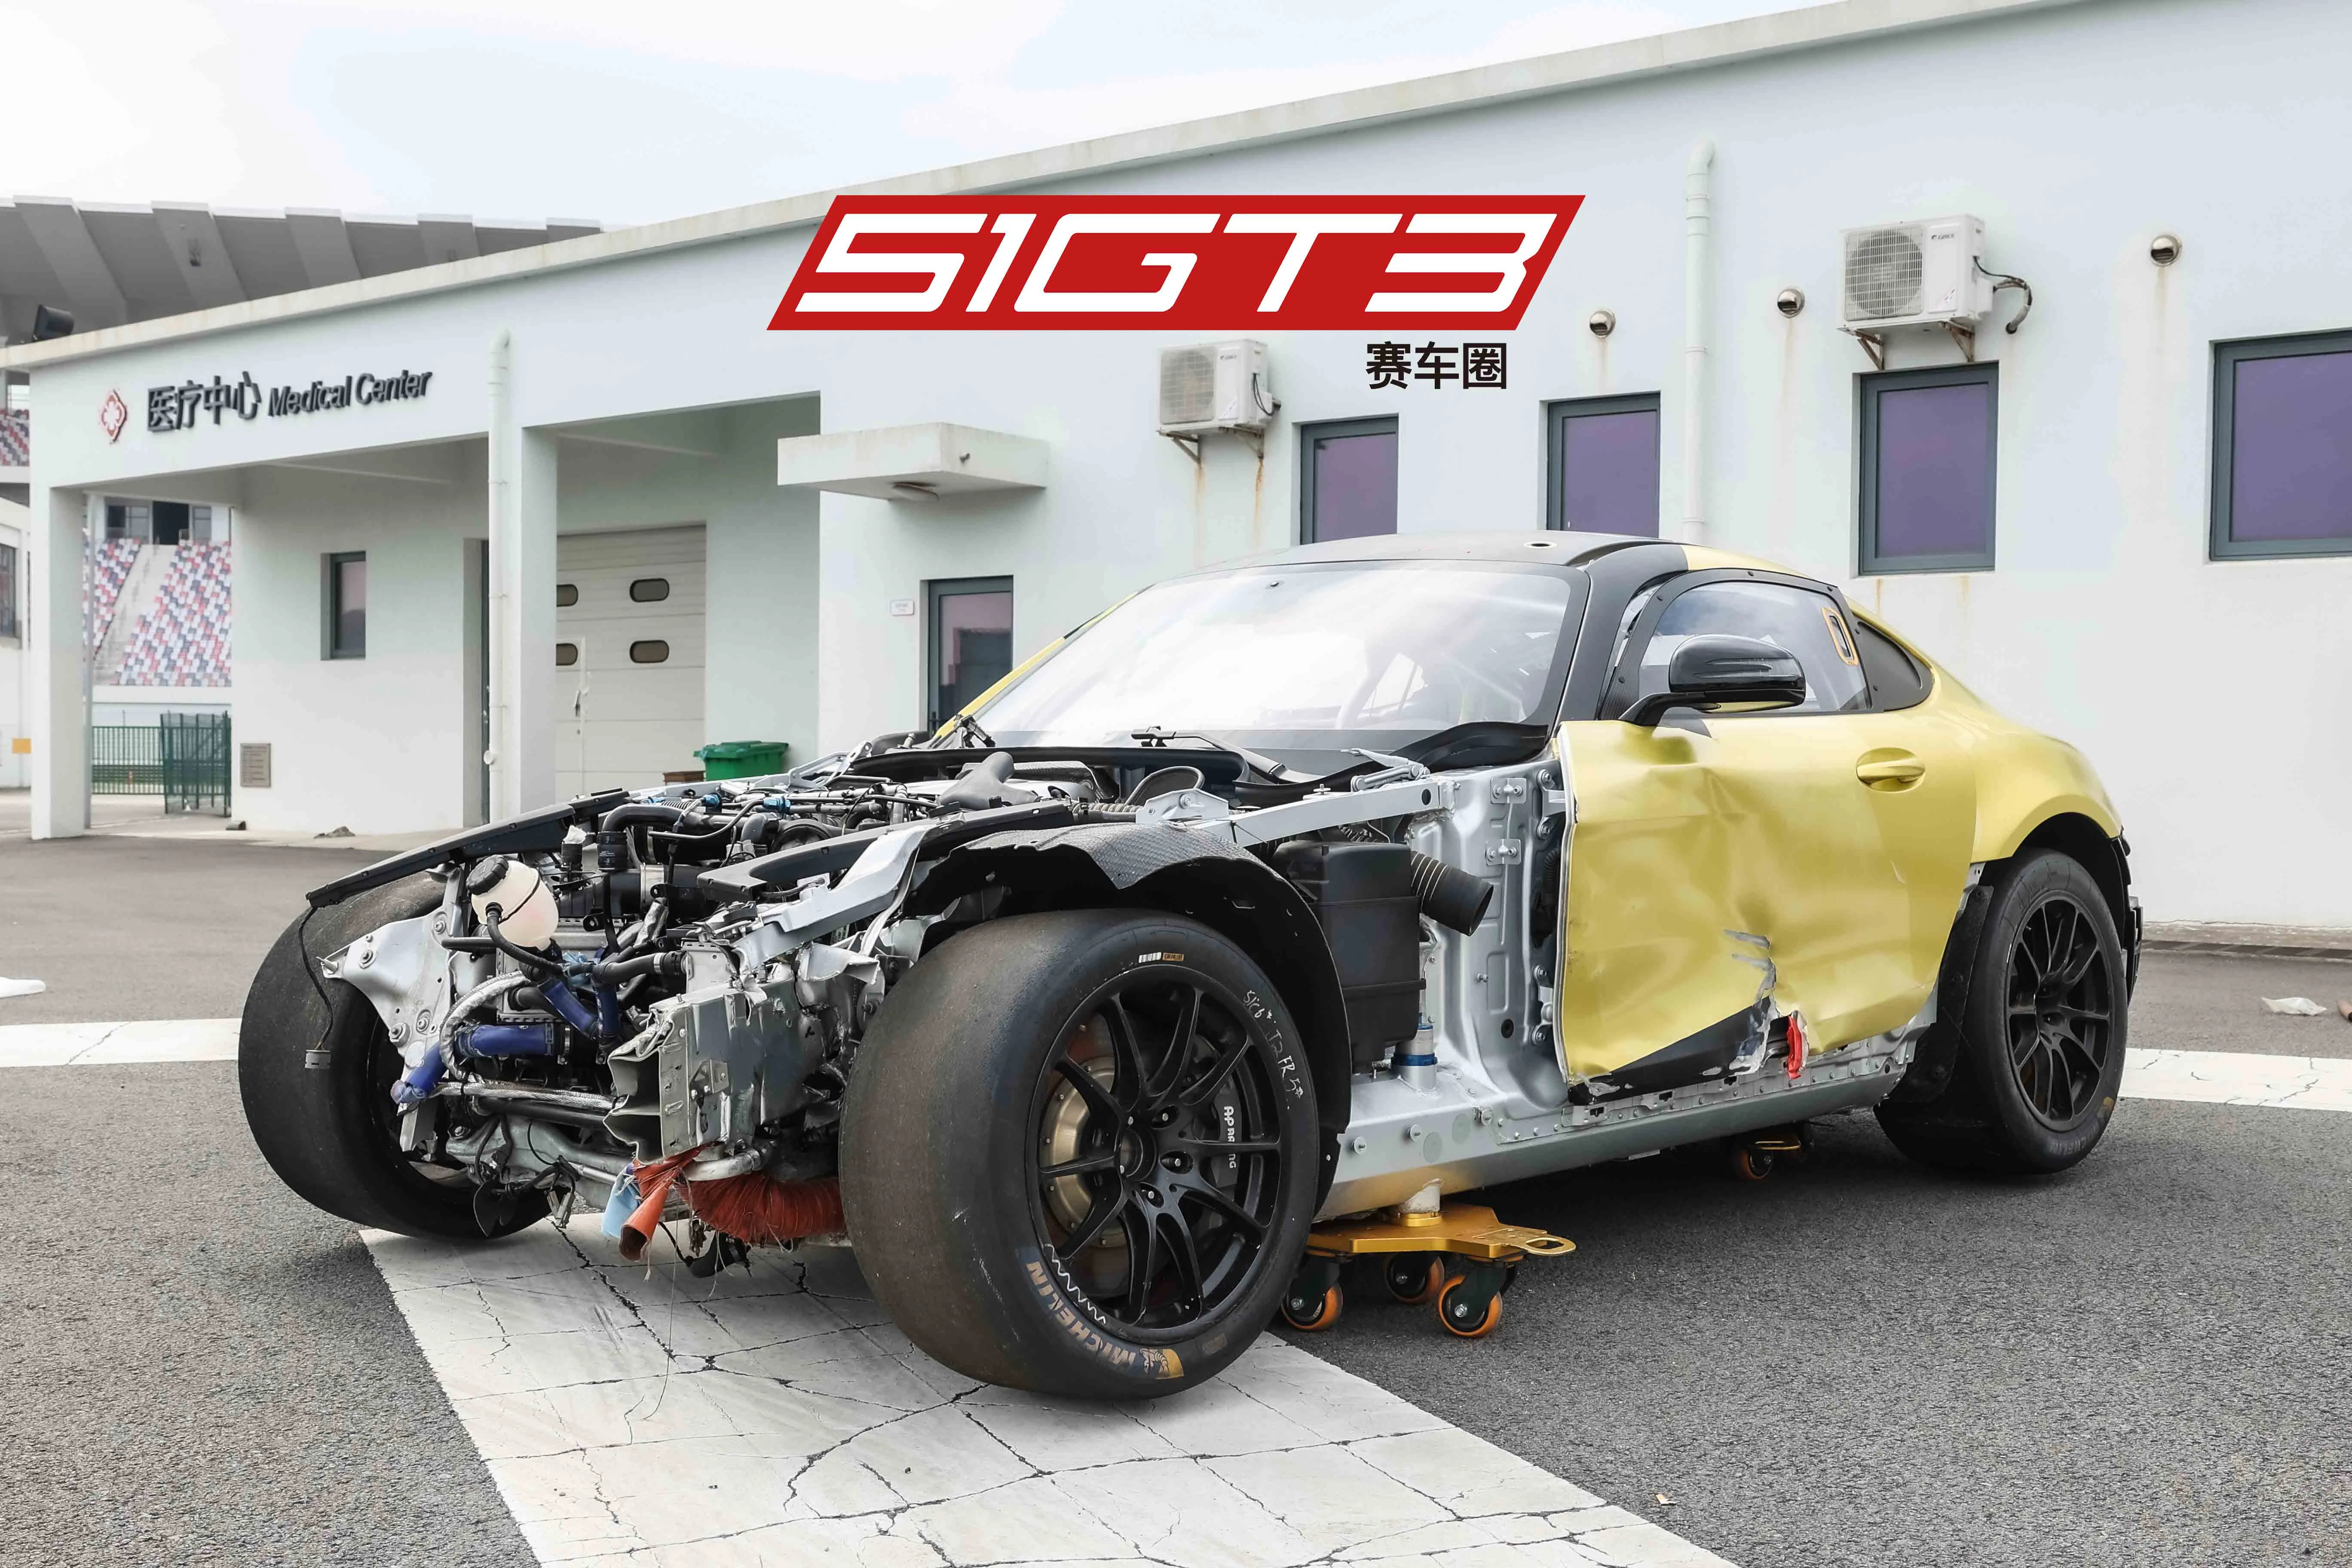 2019 مرسيدس بنز AMG GT4 #3 (محطمة) - انخفض السعر!